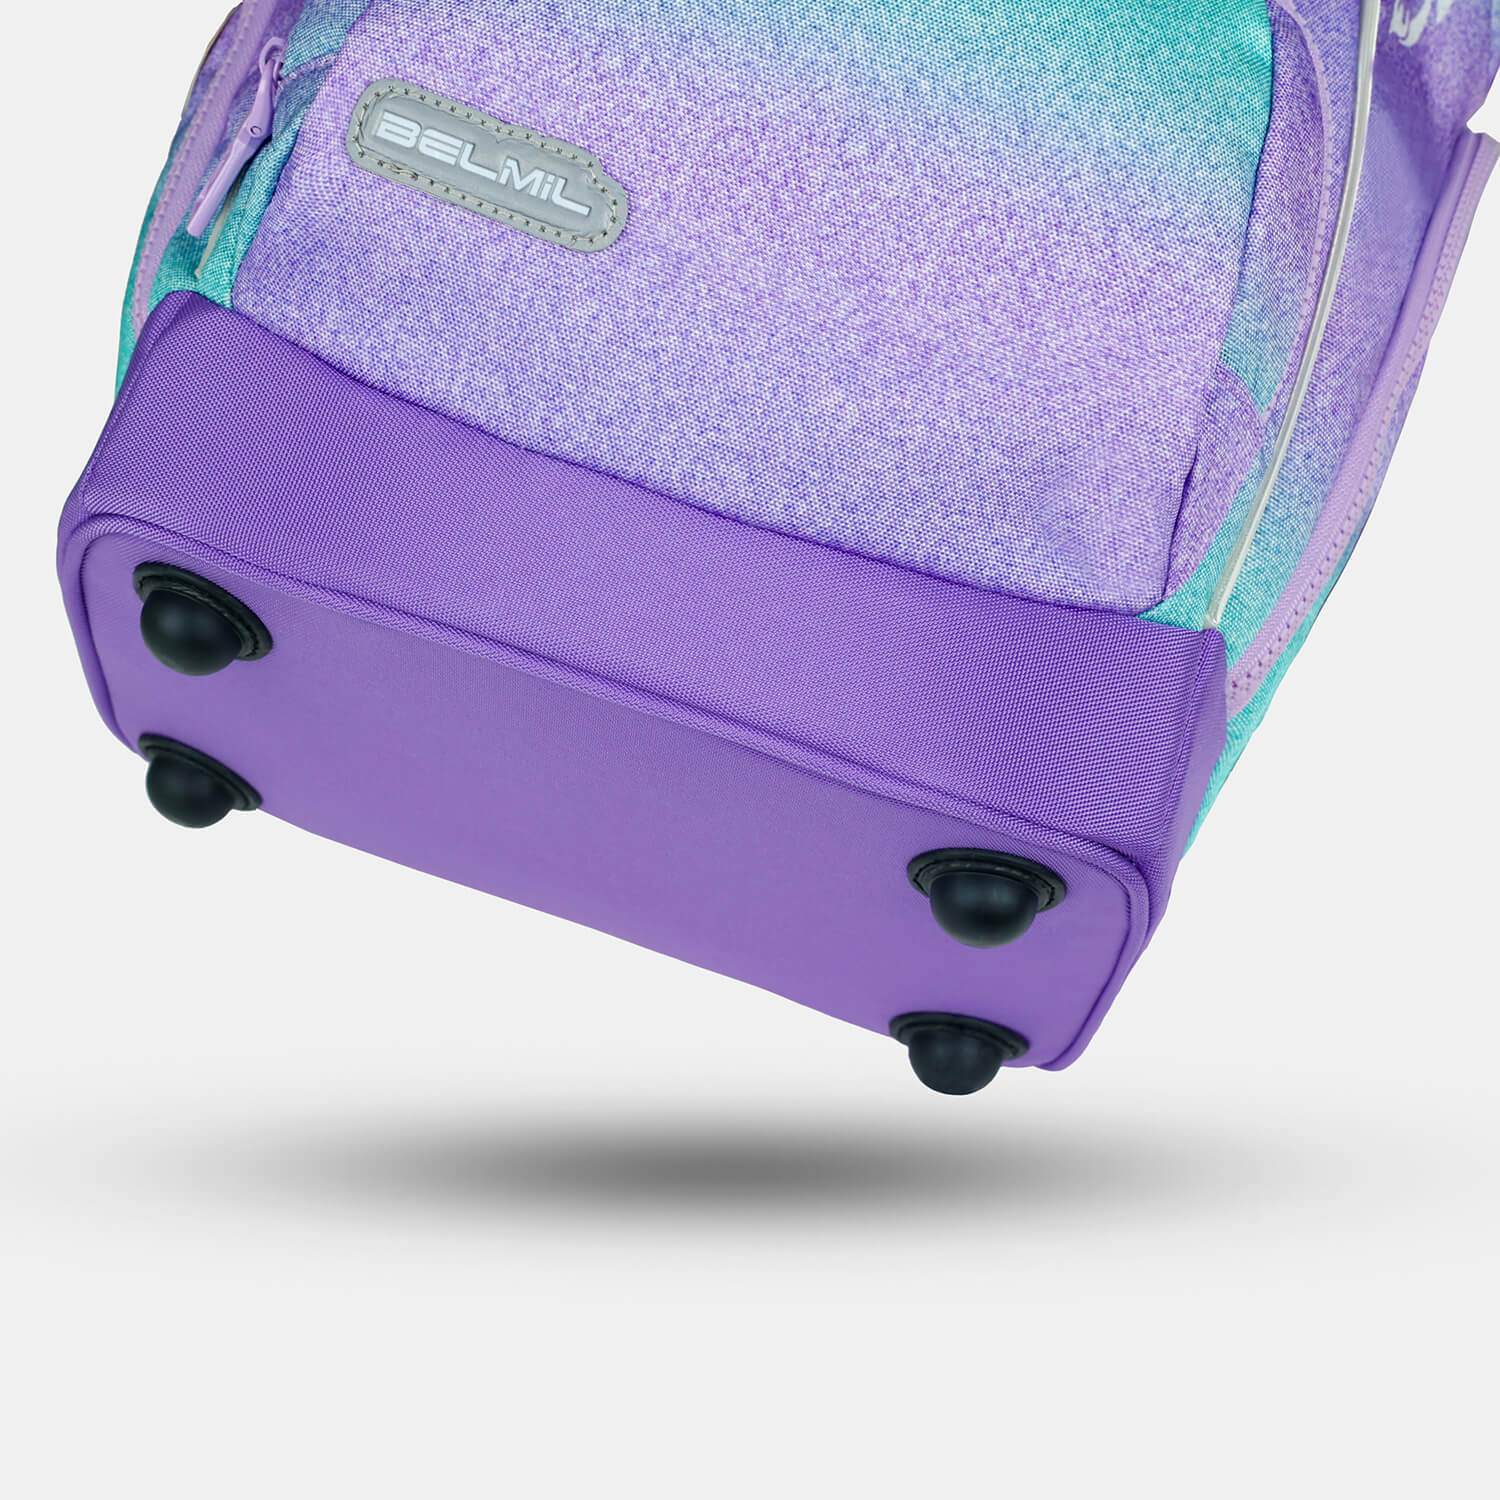 Comfy Plus Serenity Schoolbag set 5pcs.